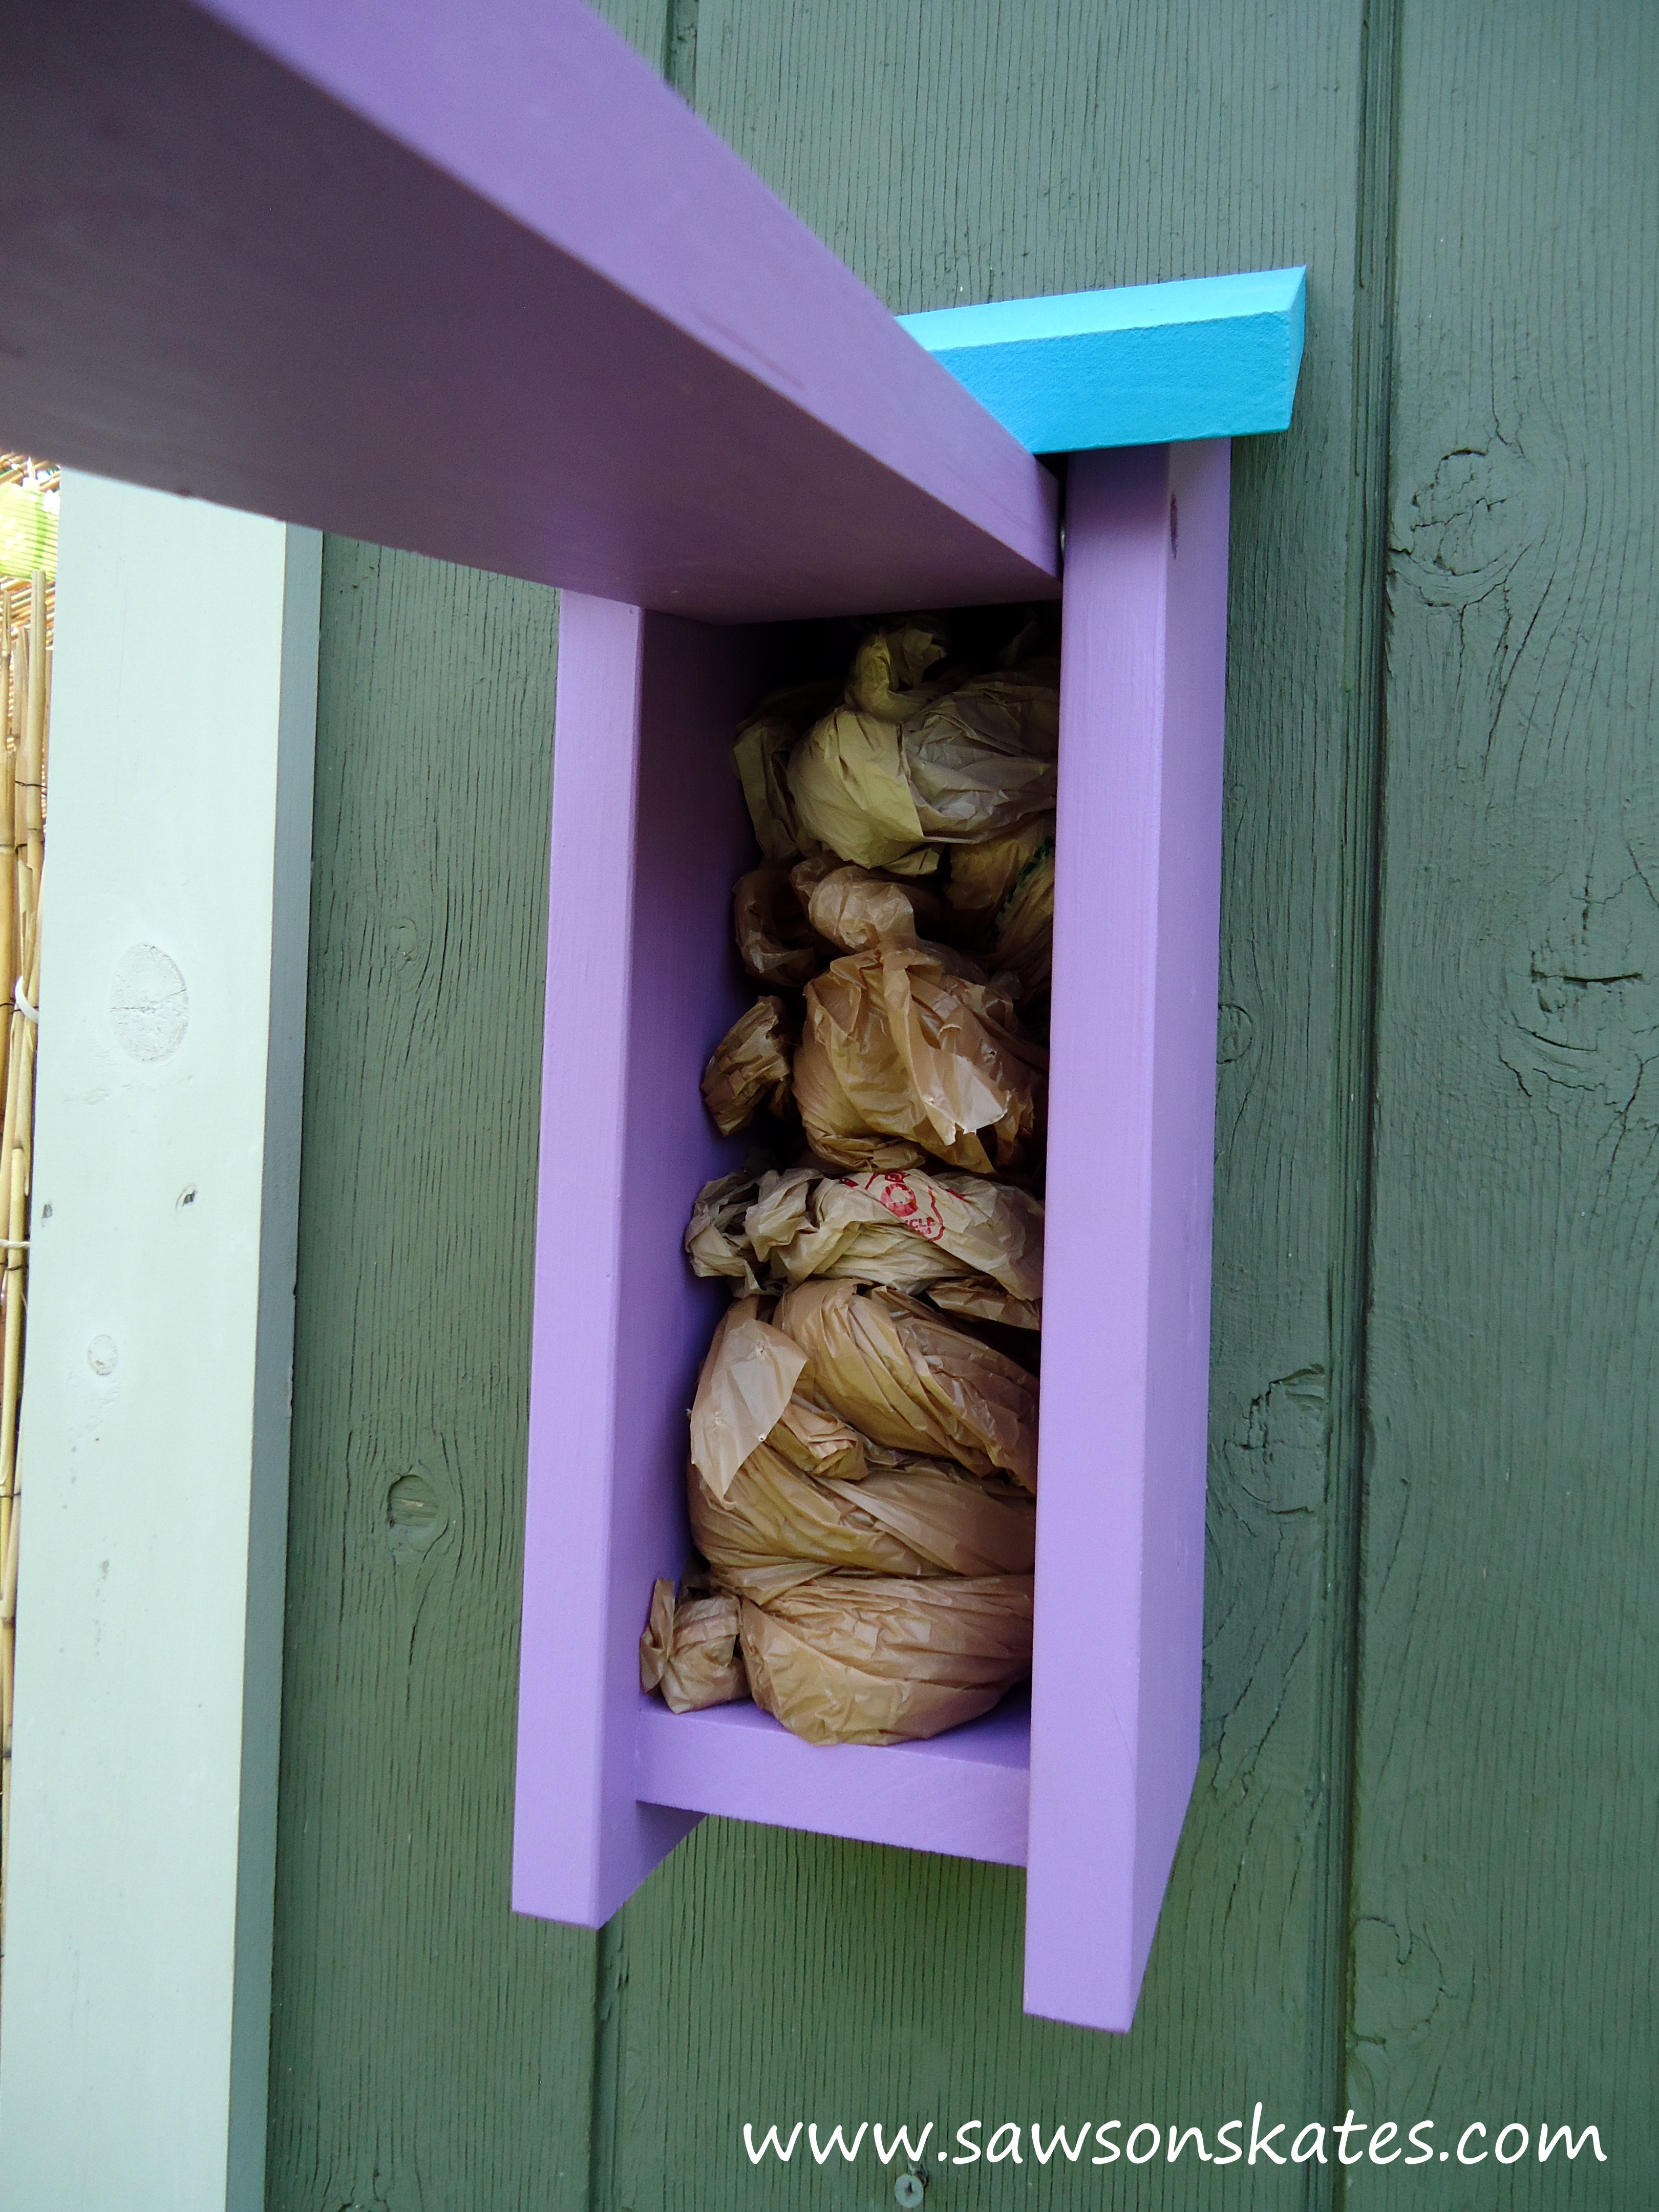 Best ideas about Dog Poop Bag Dispenser DIY
. Save or Pin DIY Dog Poop Bag Dispenser Now.